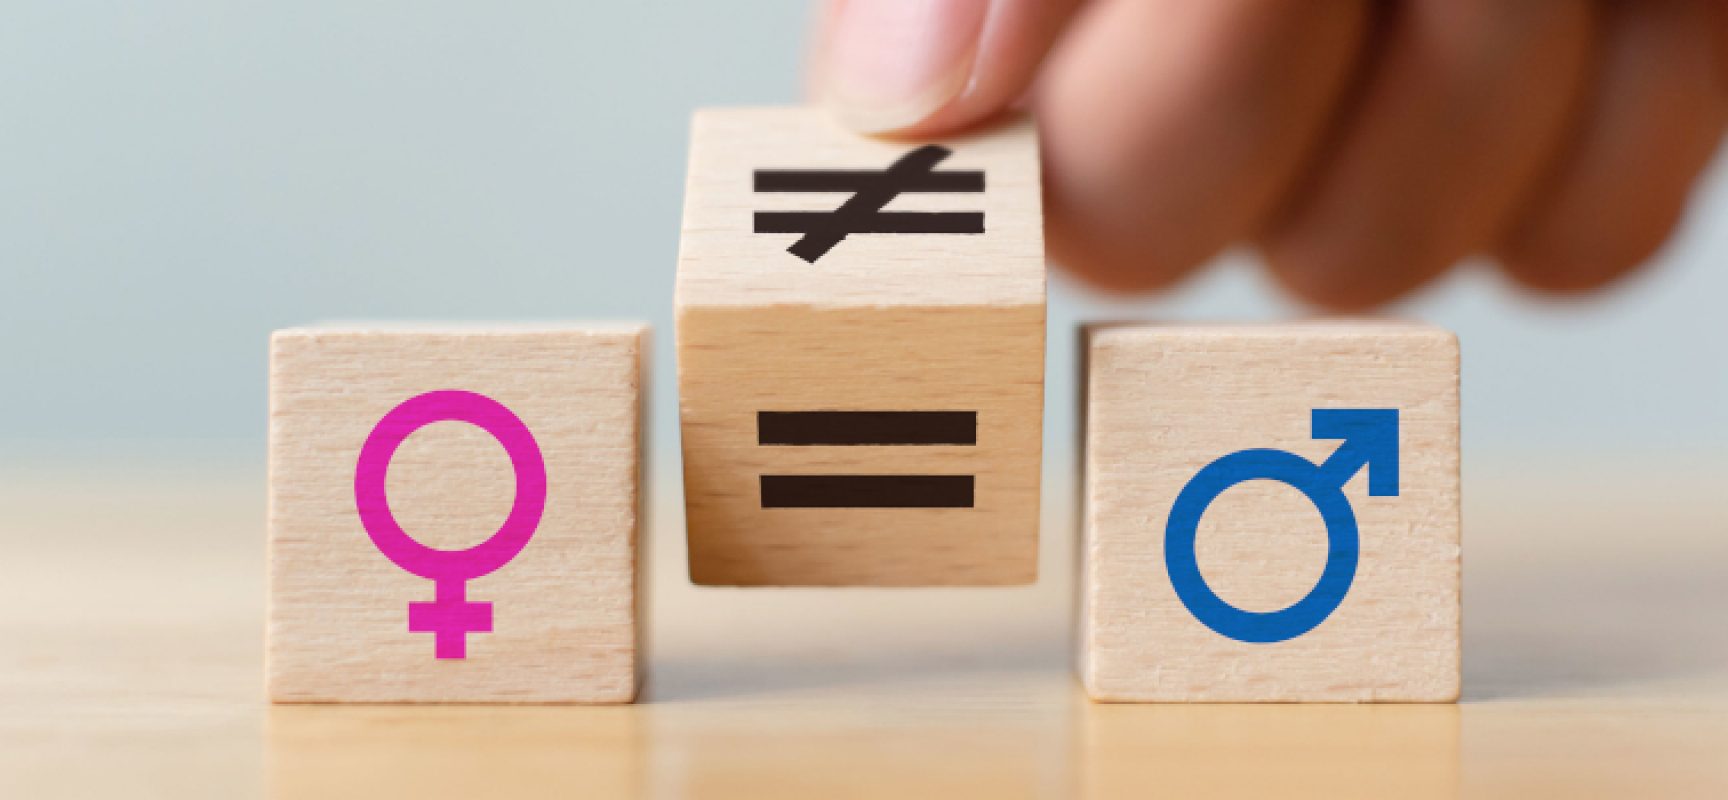 Quarto circolo “don Uva” e Fidapa insieme per la parità di genere e le pari opportunità